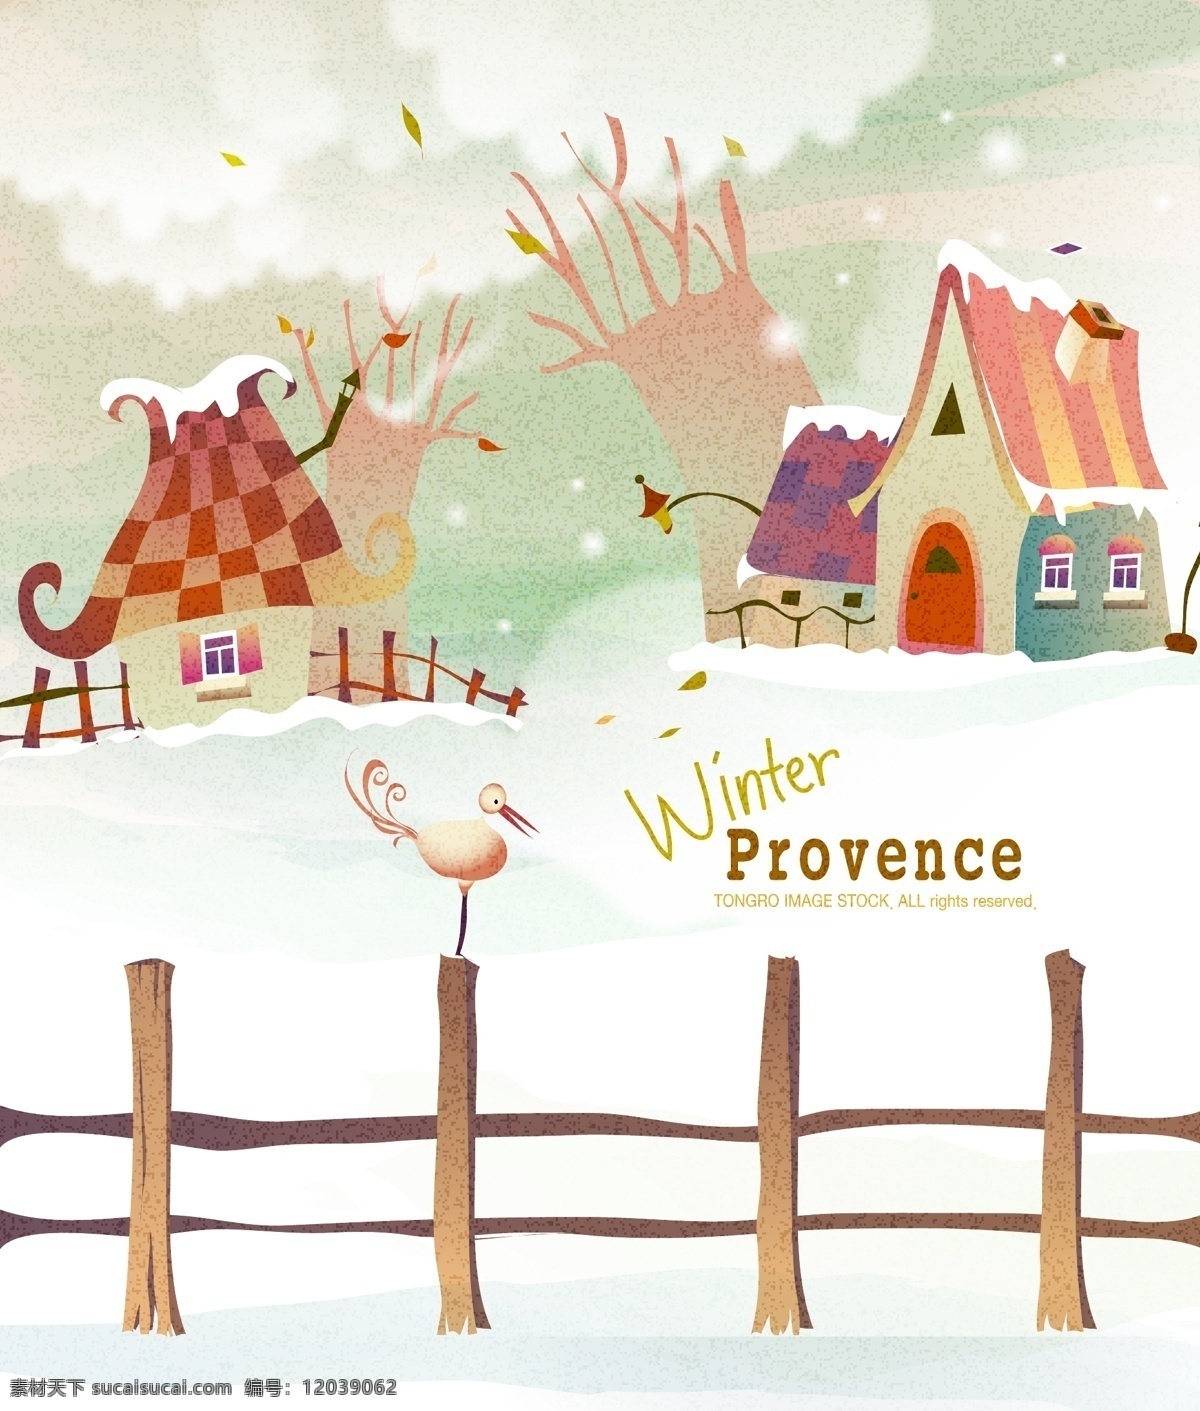 野外 树 房子 雪地 卡通风景图 插画 栏杆 木栏 云朵 雪花 冬天风景 自然风光 空间环境 矢量素材 白色